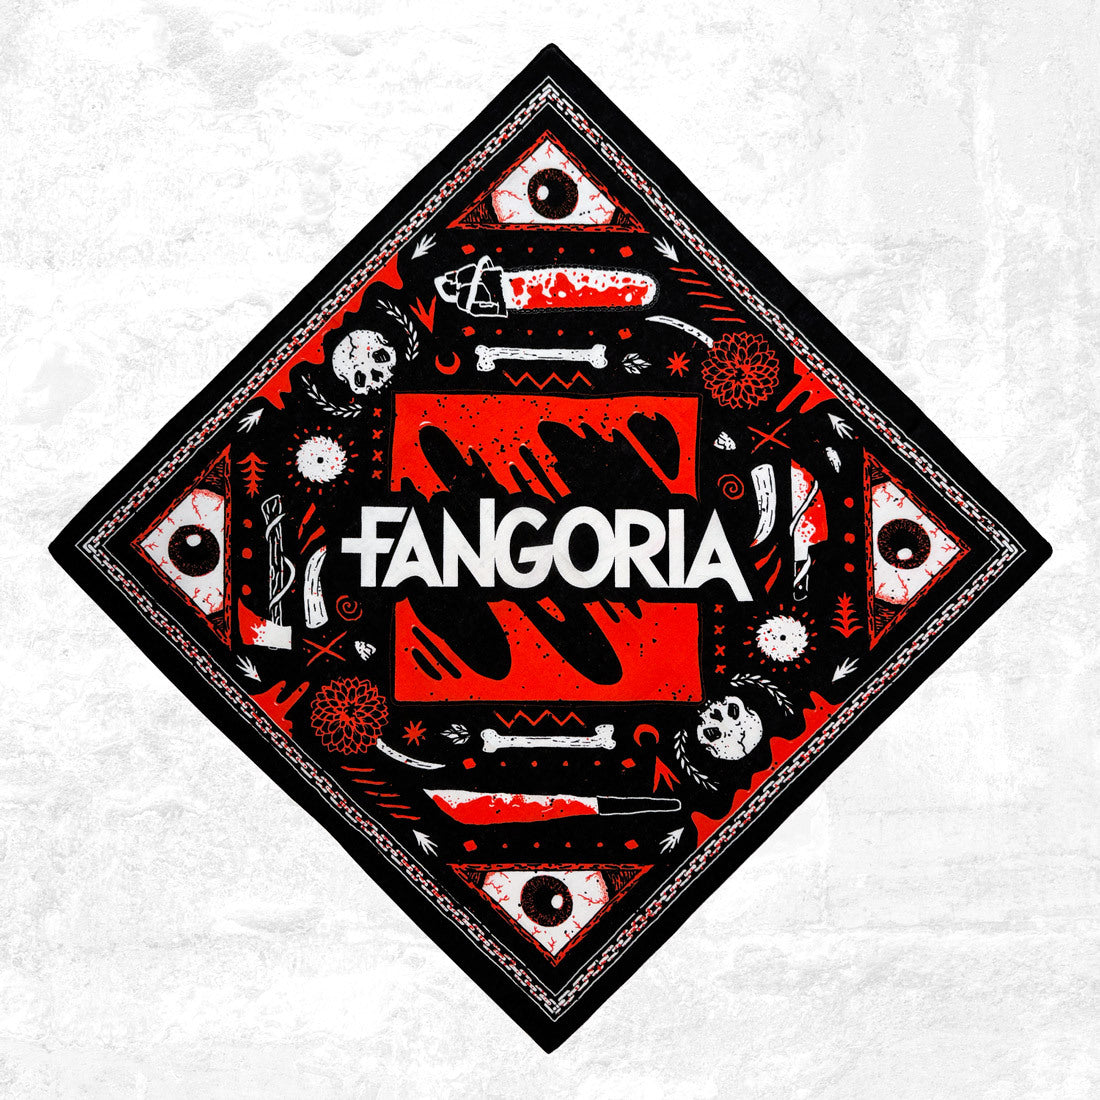 Fangoria Shirts, Fangoria Merch, Fangoria Hoodies, Fangoria vinyl records,  Fangoria Posters, Fangoria Hats, Fangoria CDs, Fangoria Music, Fangoria  Merch Store